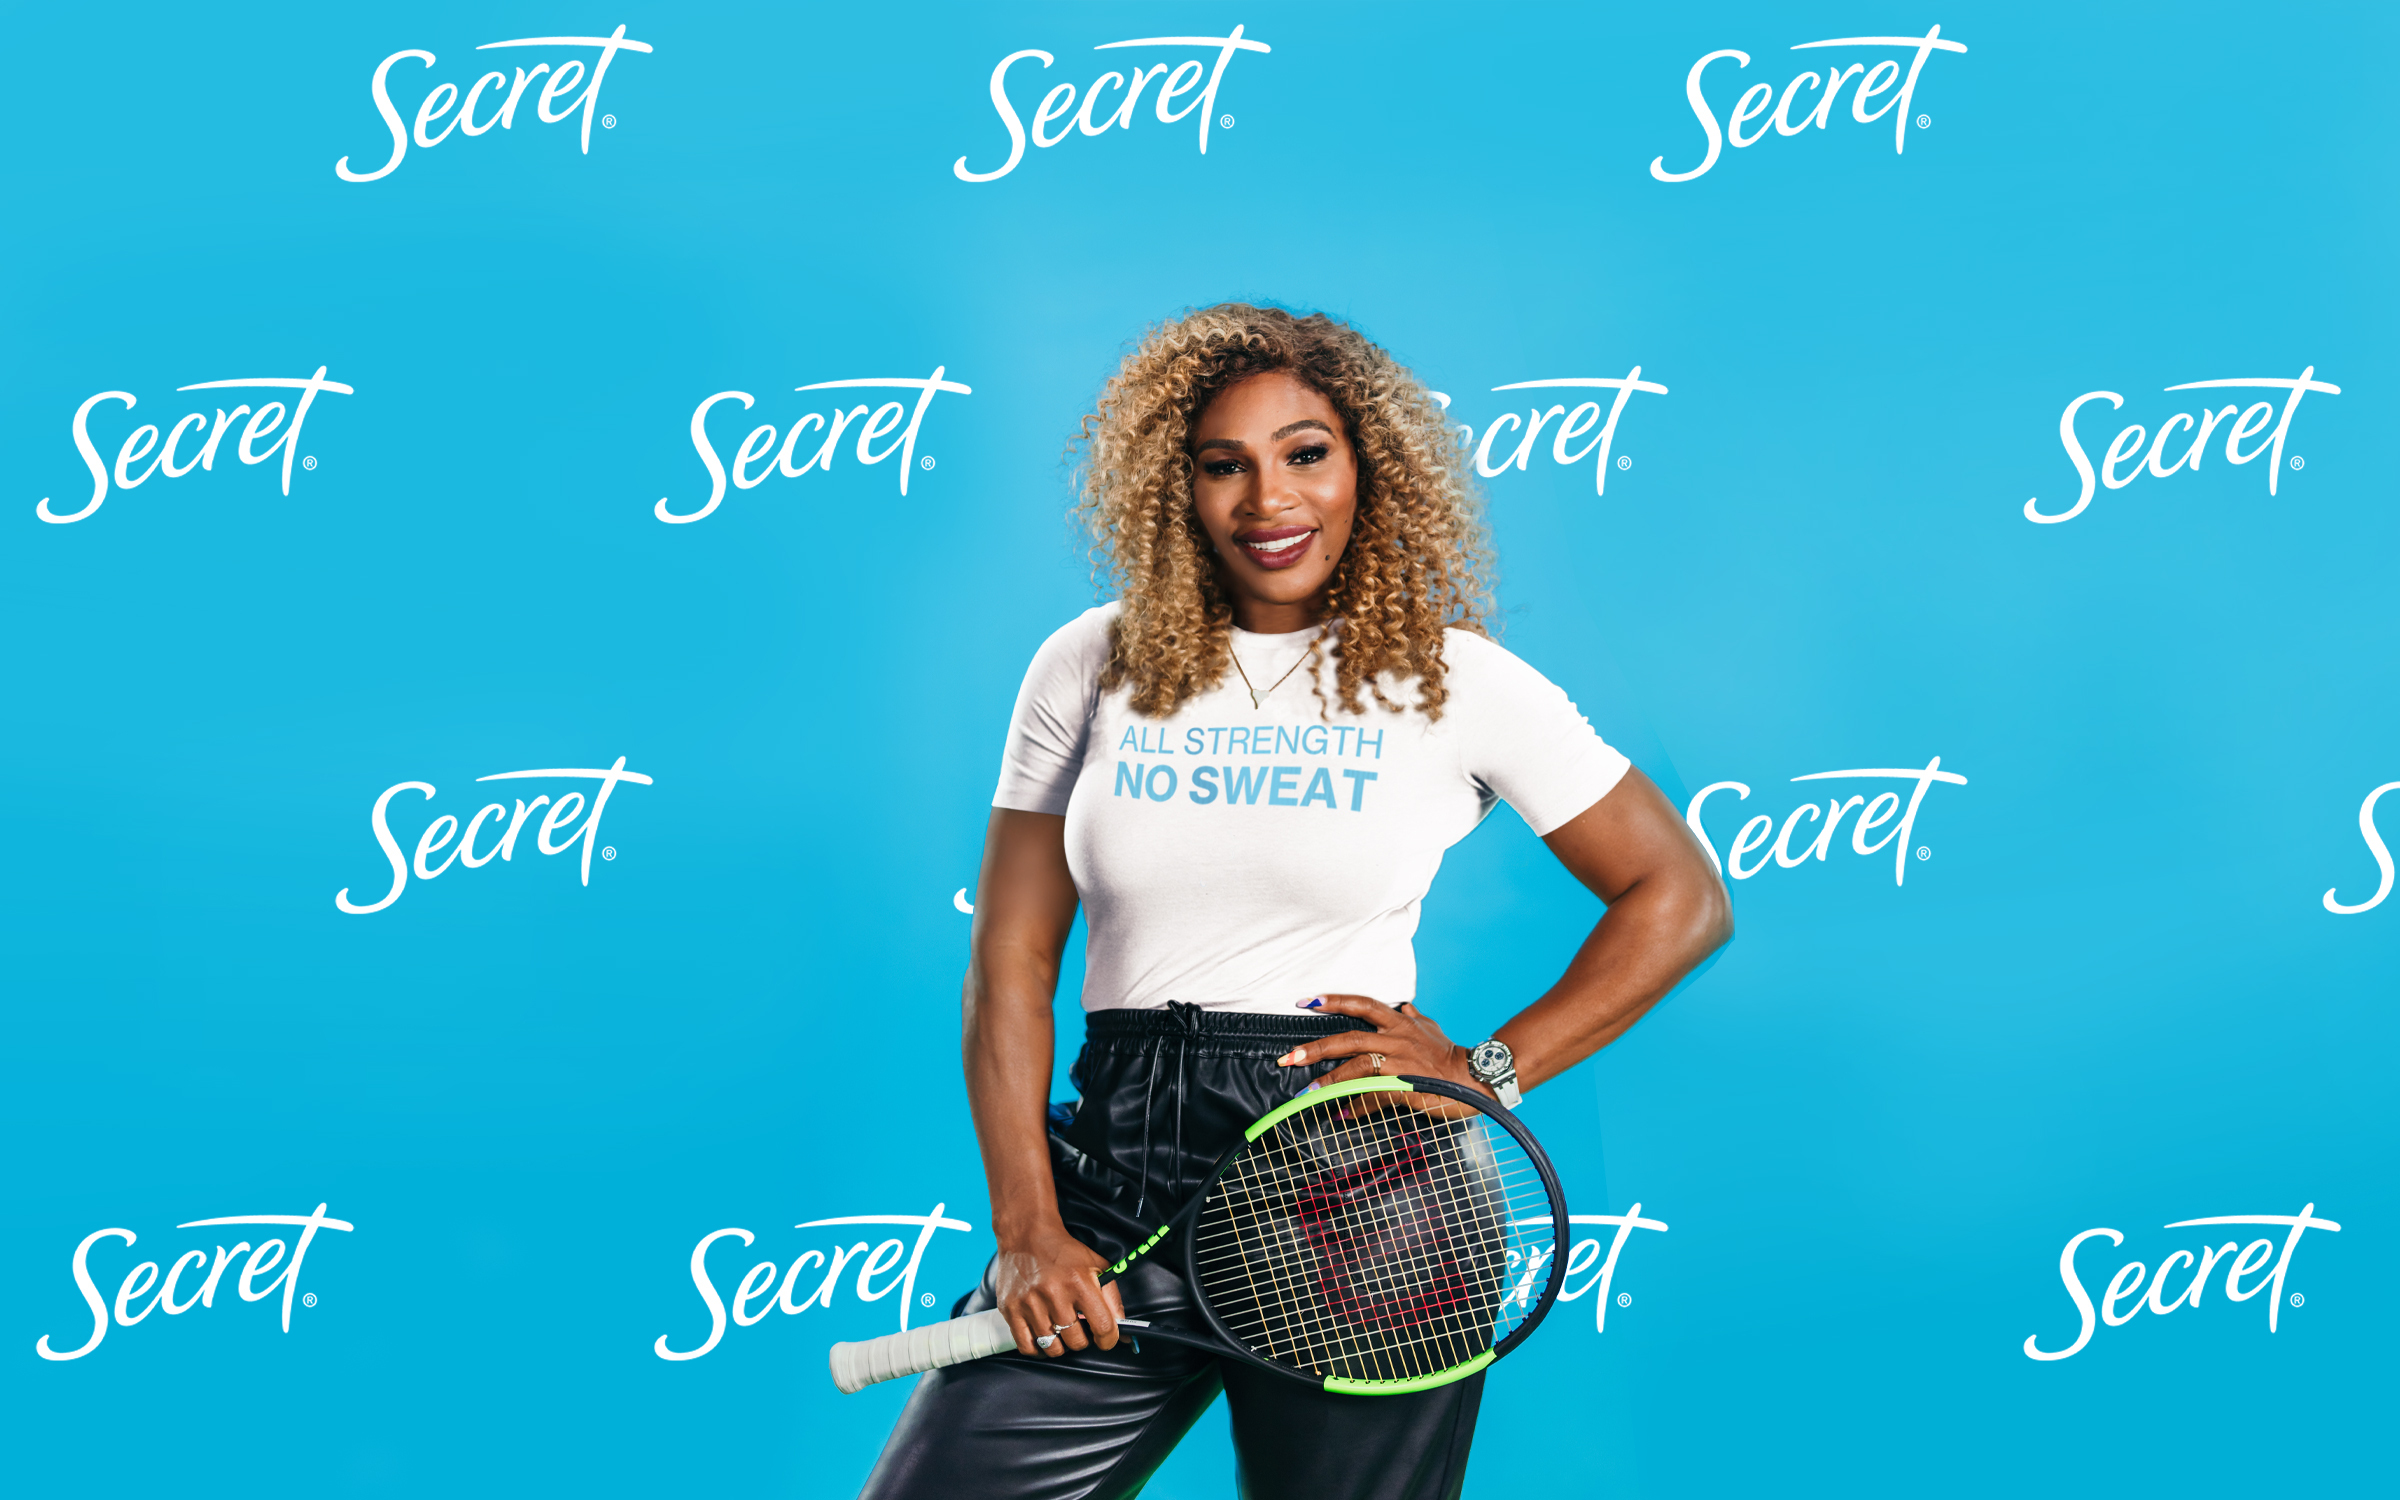 Serena Williams Secret endorsement